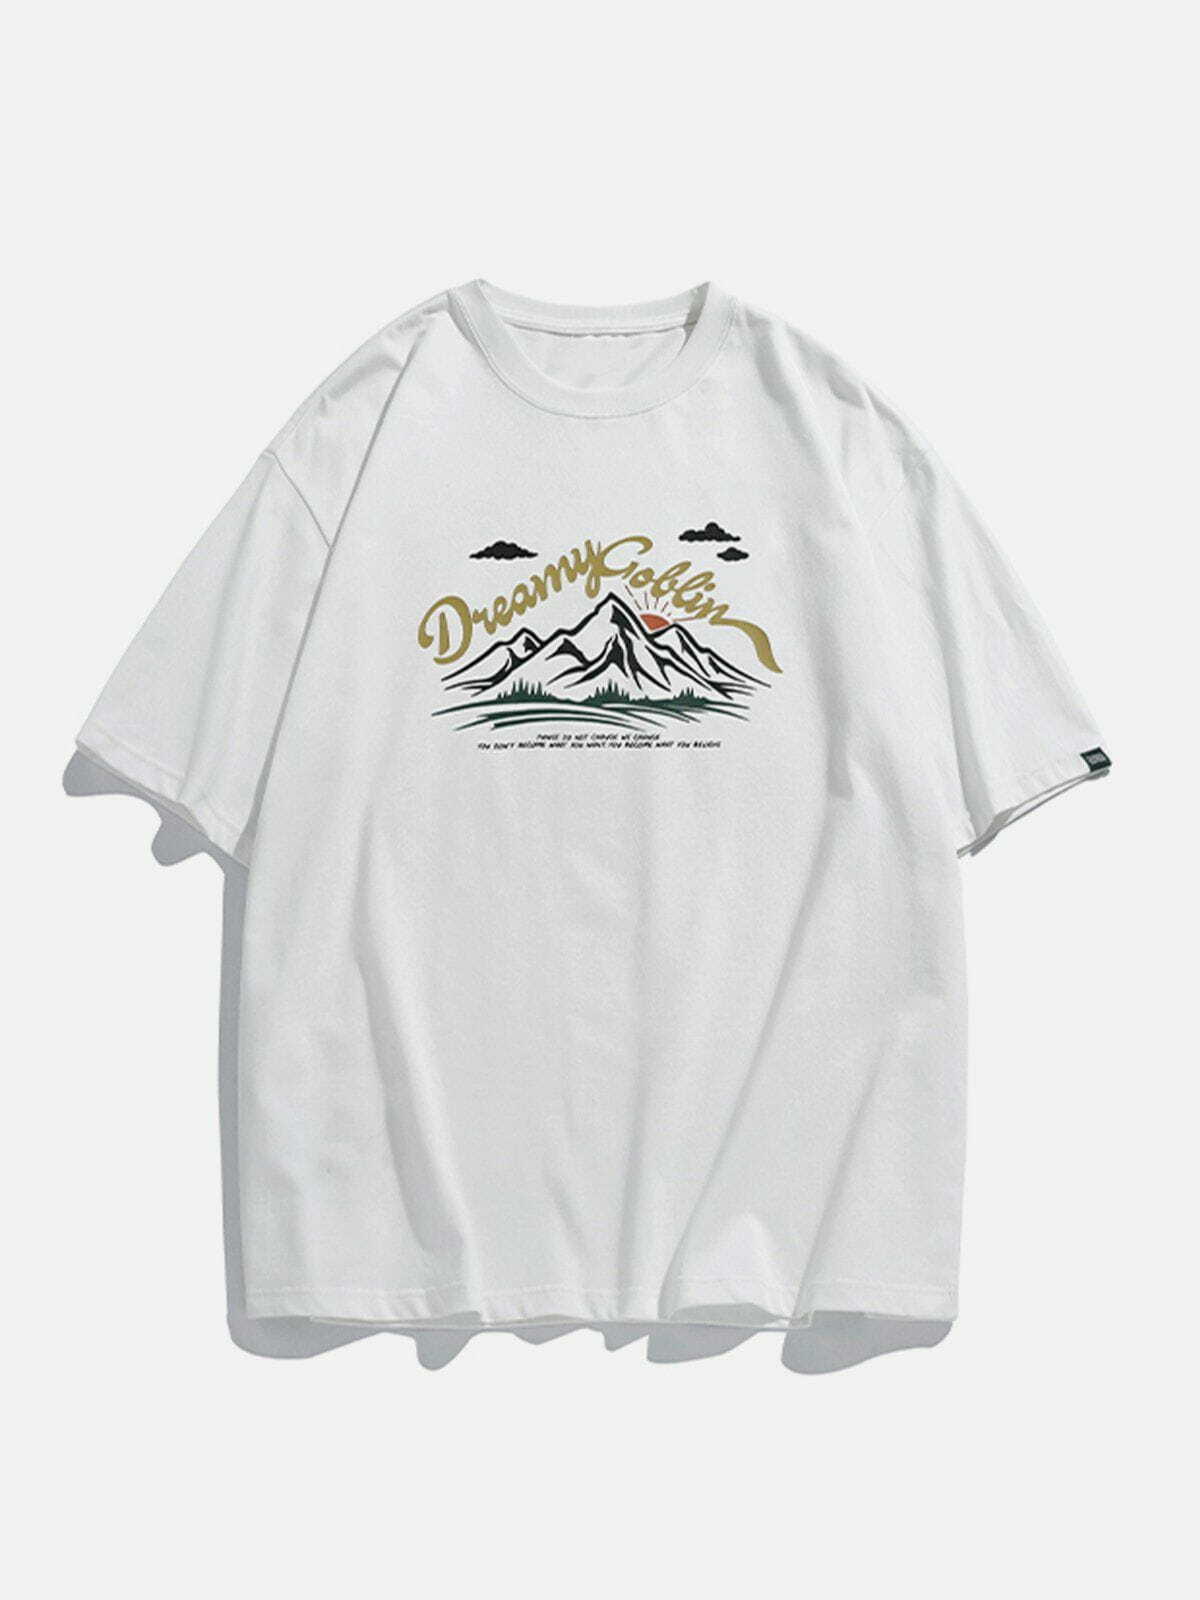 retro mountain tee edgy  vibrant y2k streetwear tshirt 5613